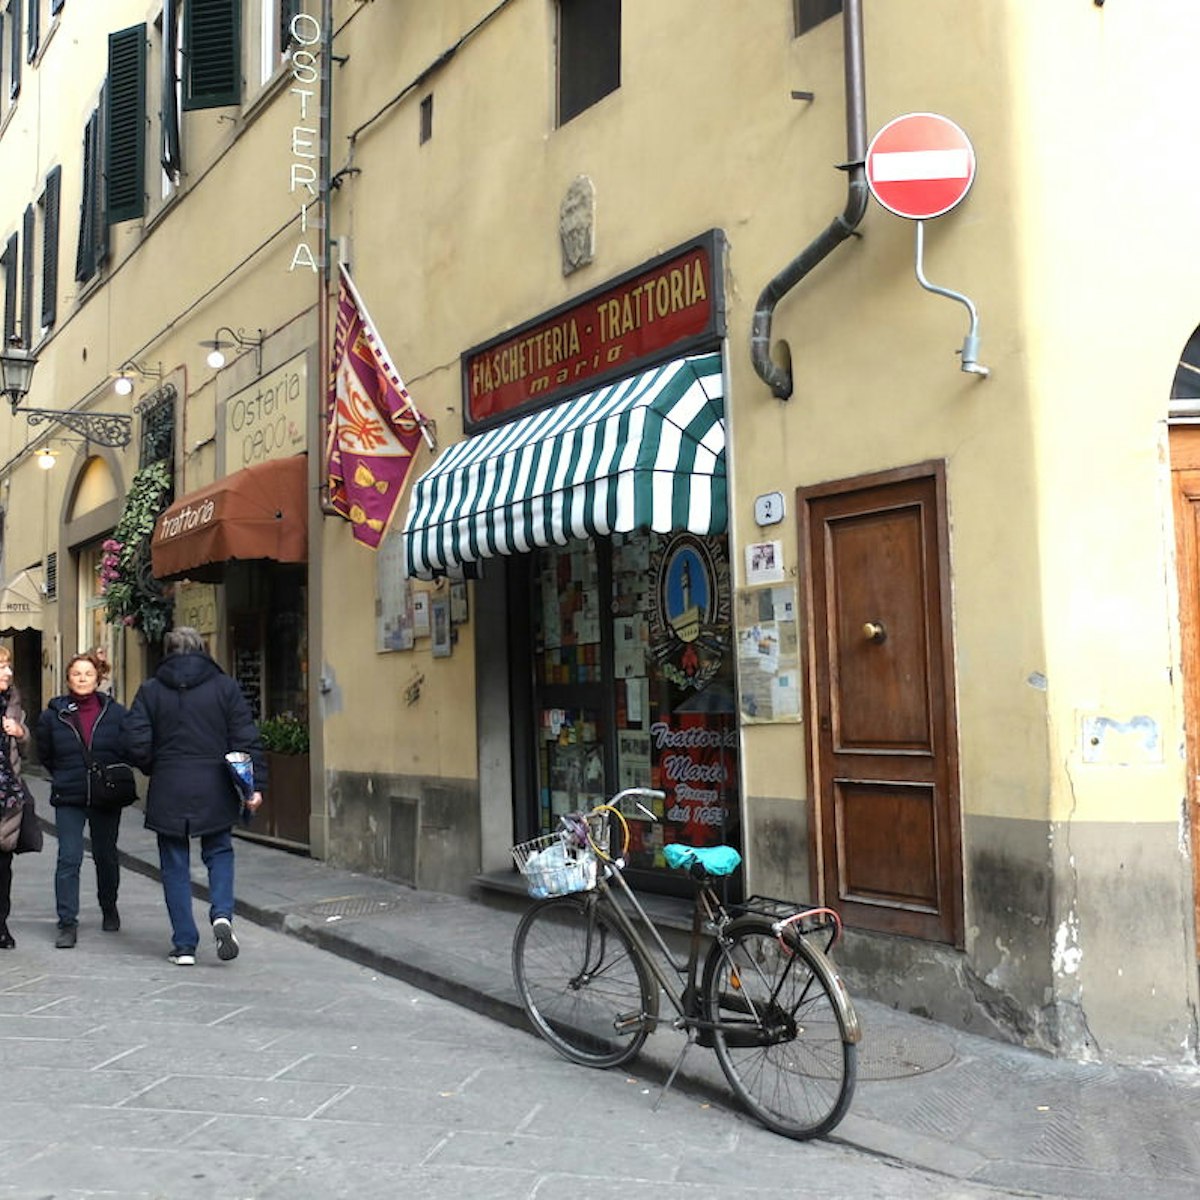 outside facade of Trattoria Mario